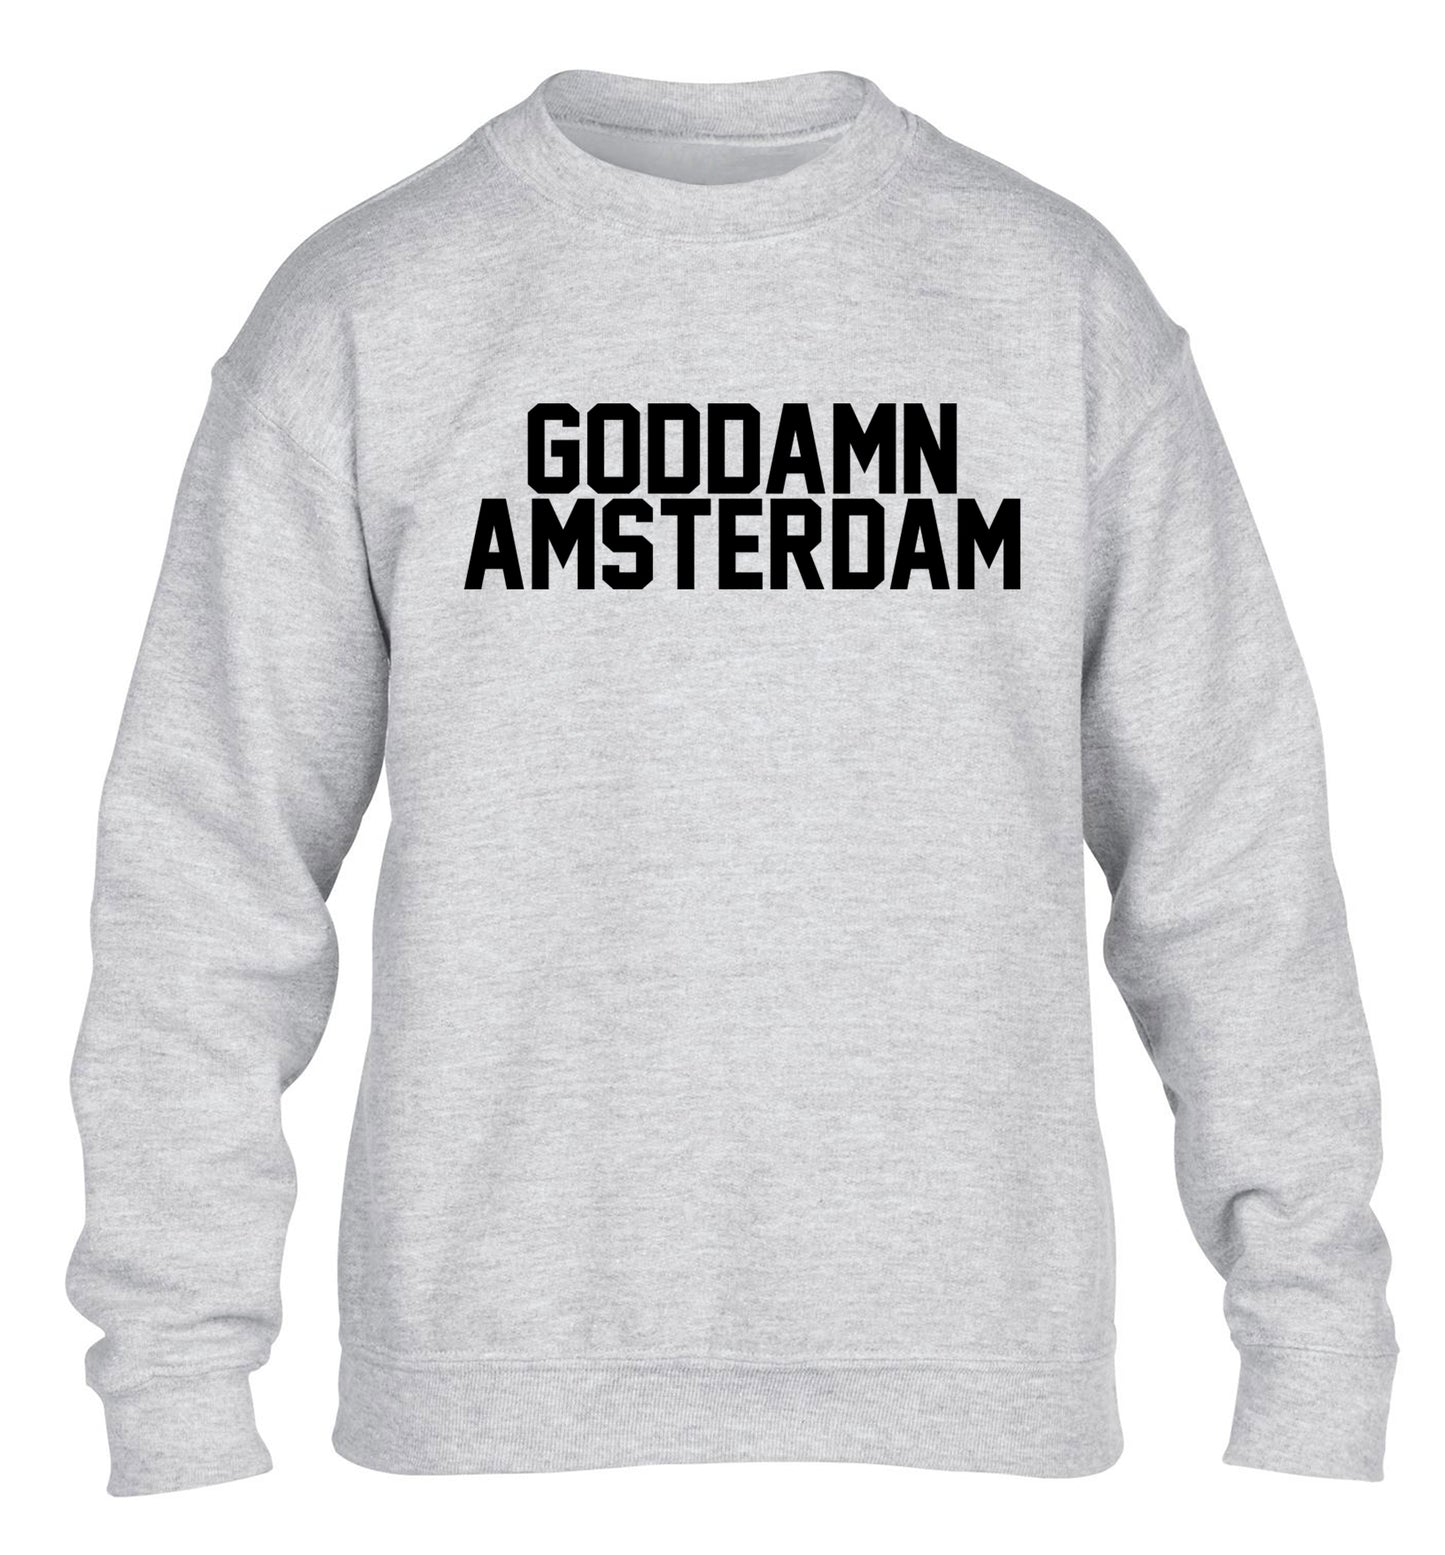 Goddamn Amsterdam children's grey sweater 12-13 Years